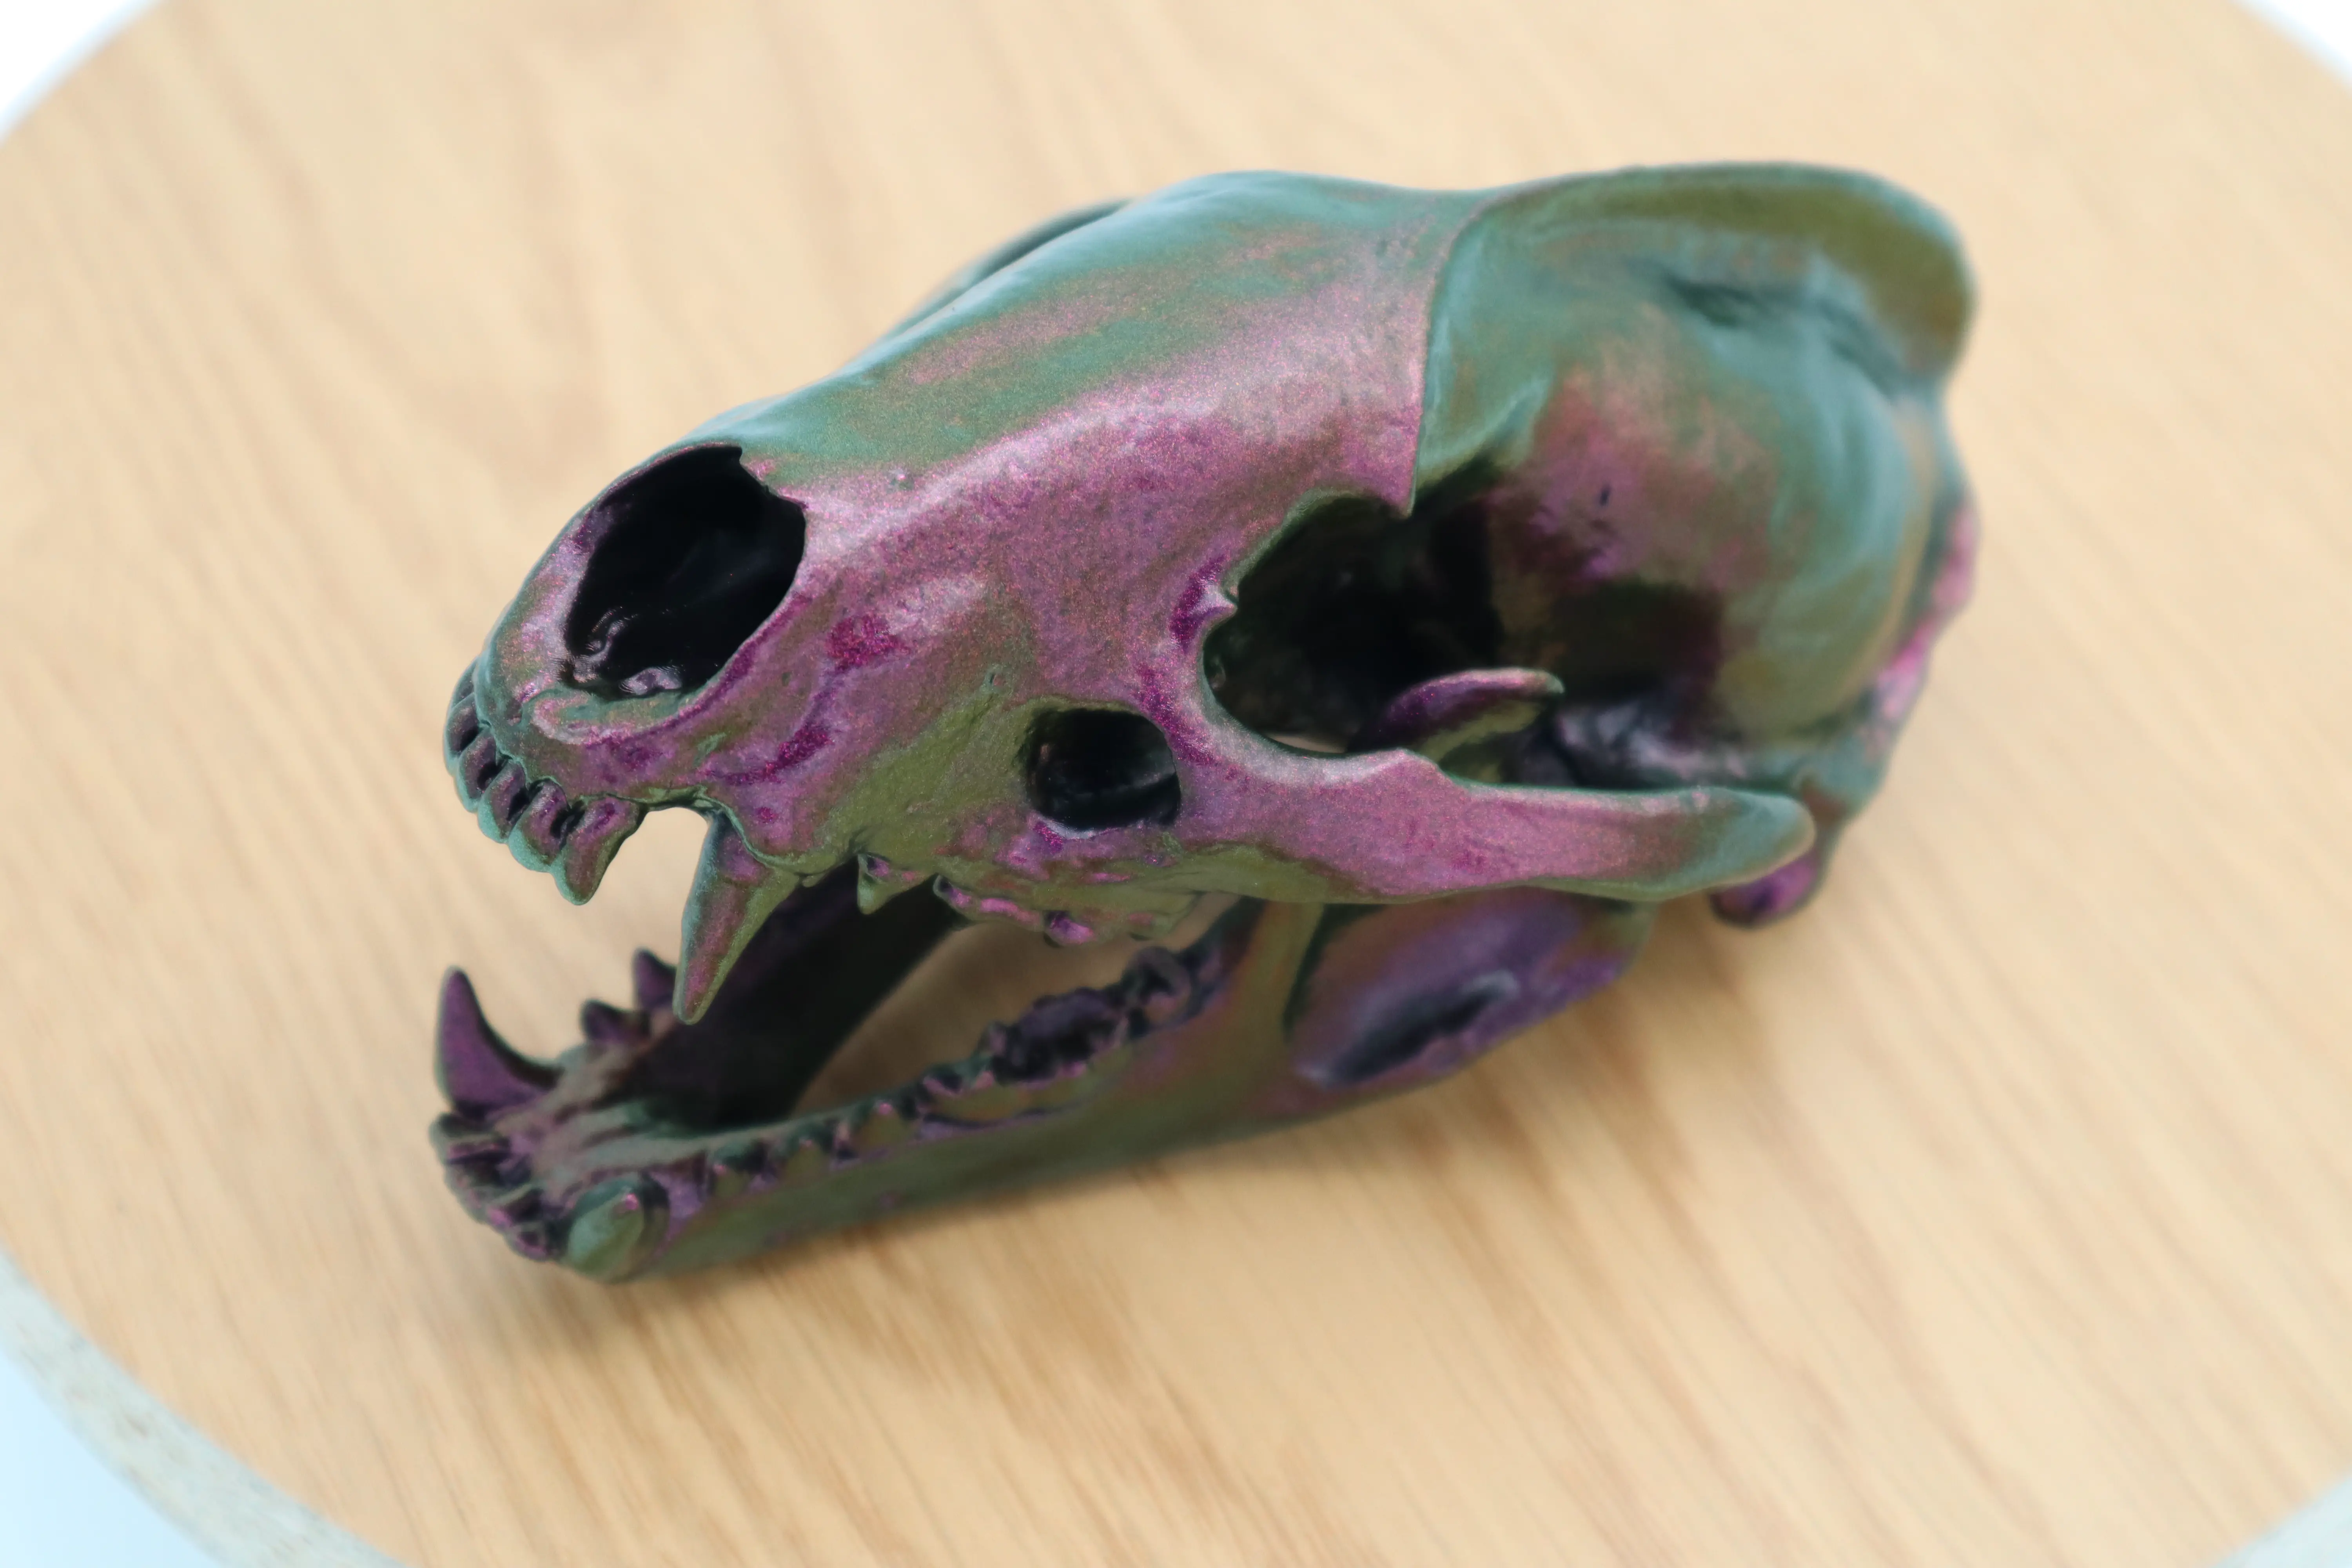 Badger Skull Scan from a real skull